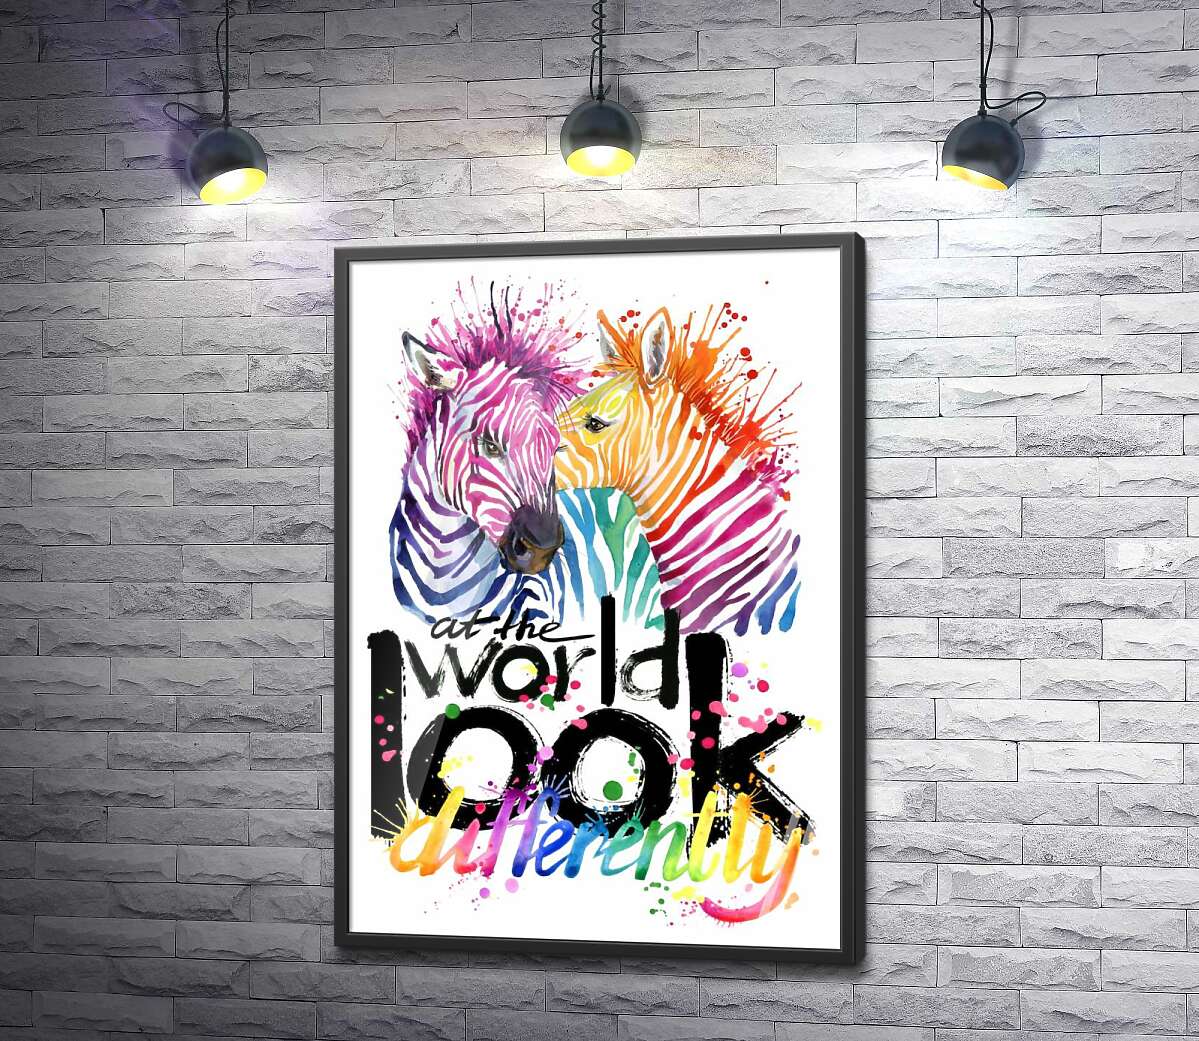 постер Цветные полоски зебр и надпись "look at the world differently"